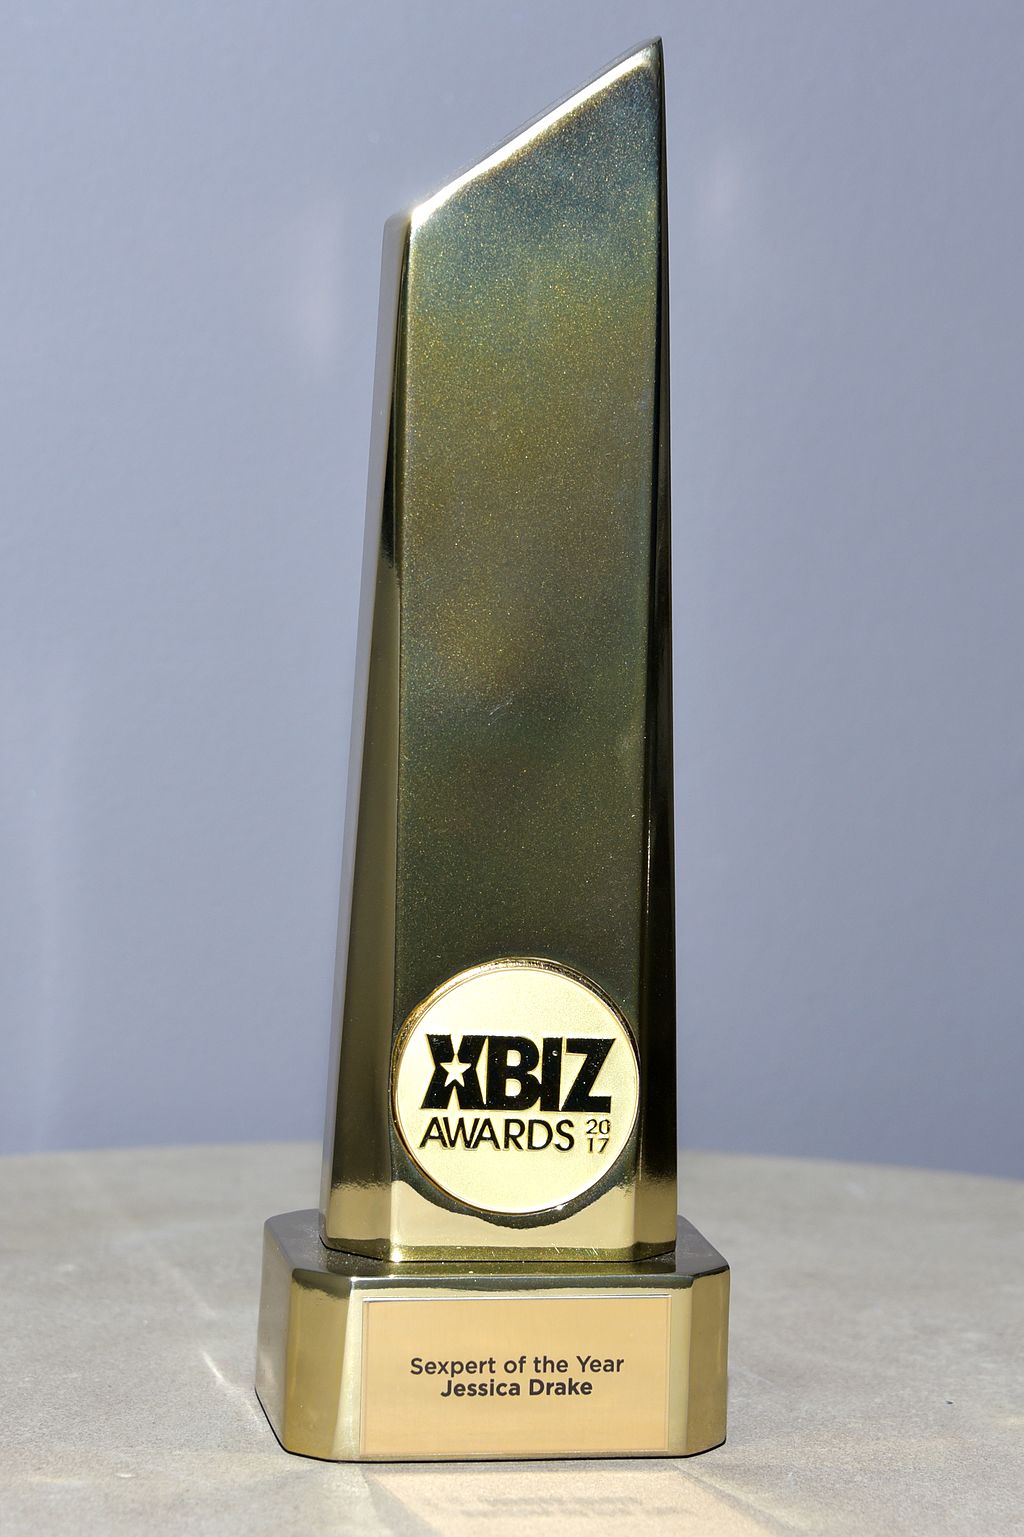 XBIZ Awards pic